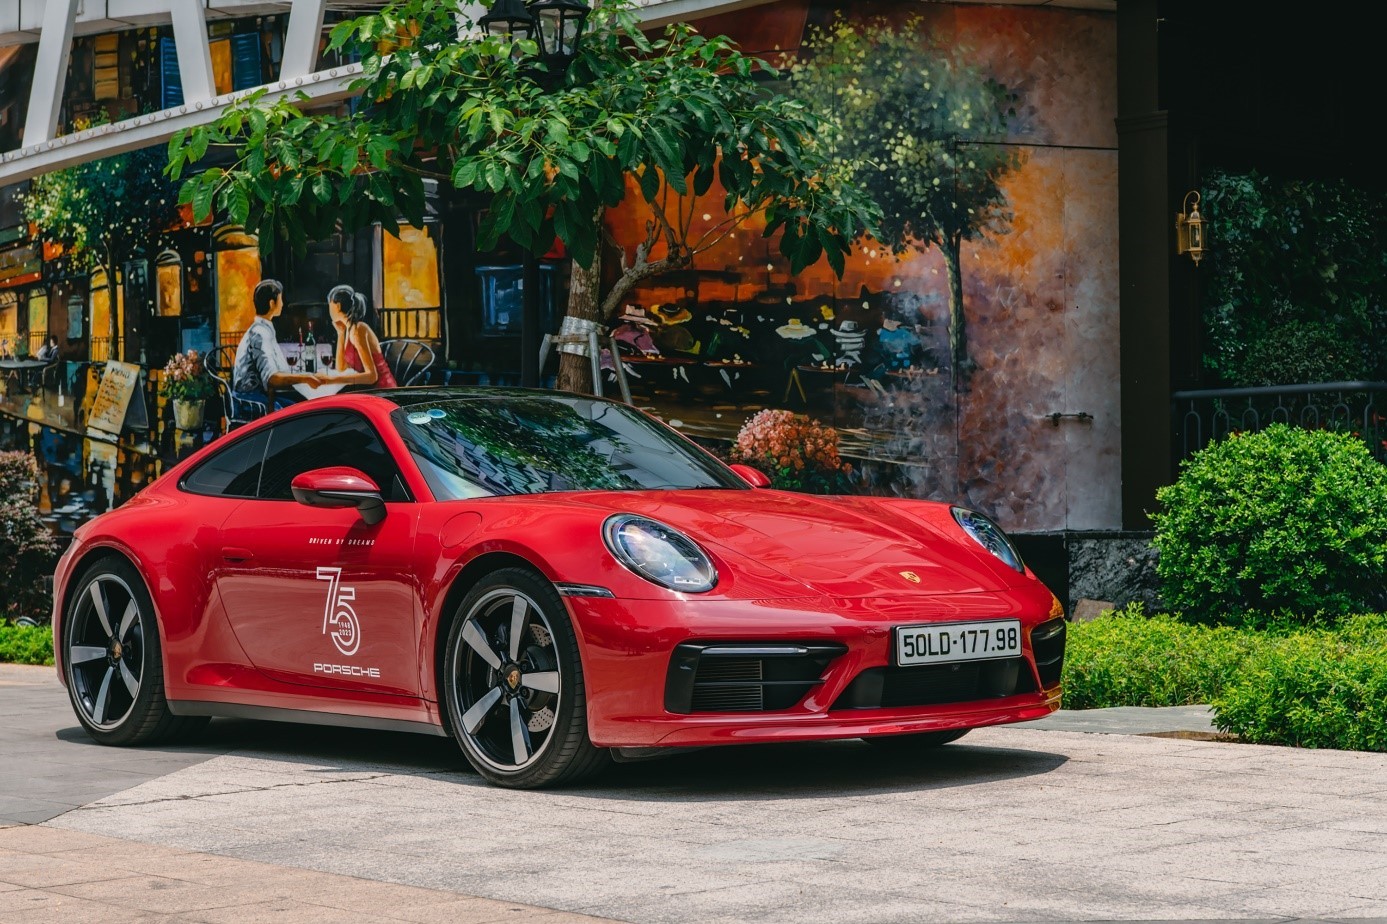 Chương trình trải nghiệm Porsche City Road Tour